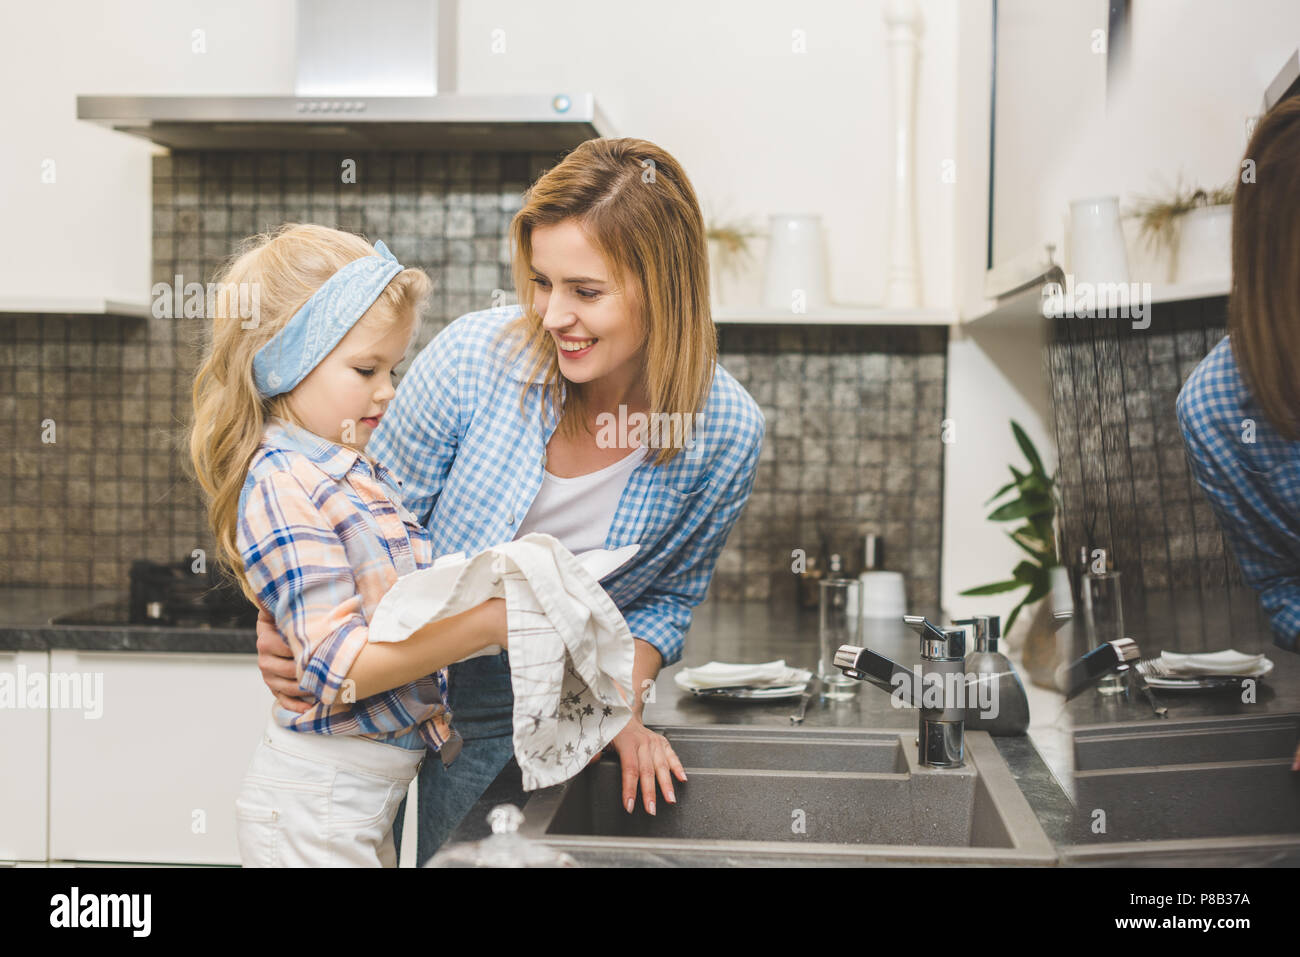 Дочка моет посуду. Мама с дочкой моют посуду. Девочка помогает маме мыть посуду. Помогать маме по дому. Фотосессия мама и дочка на кухне.